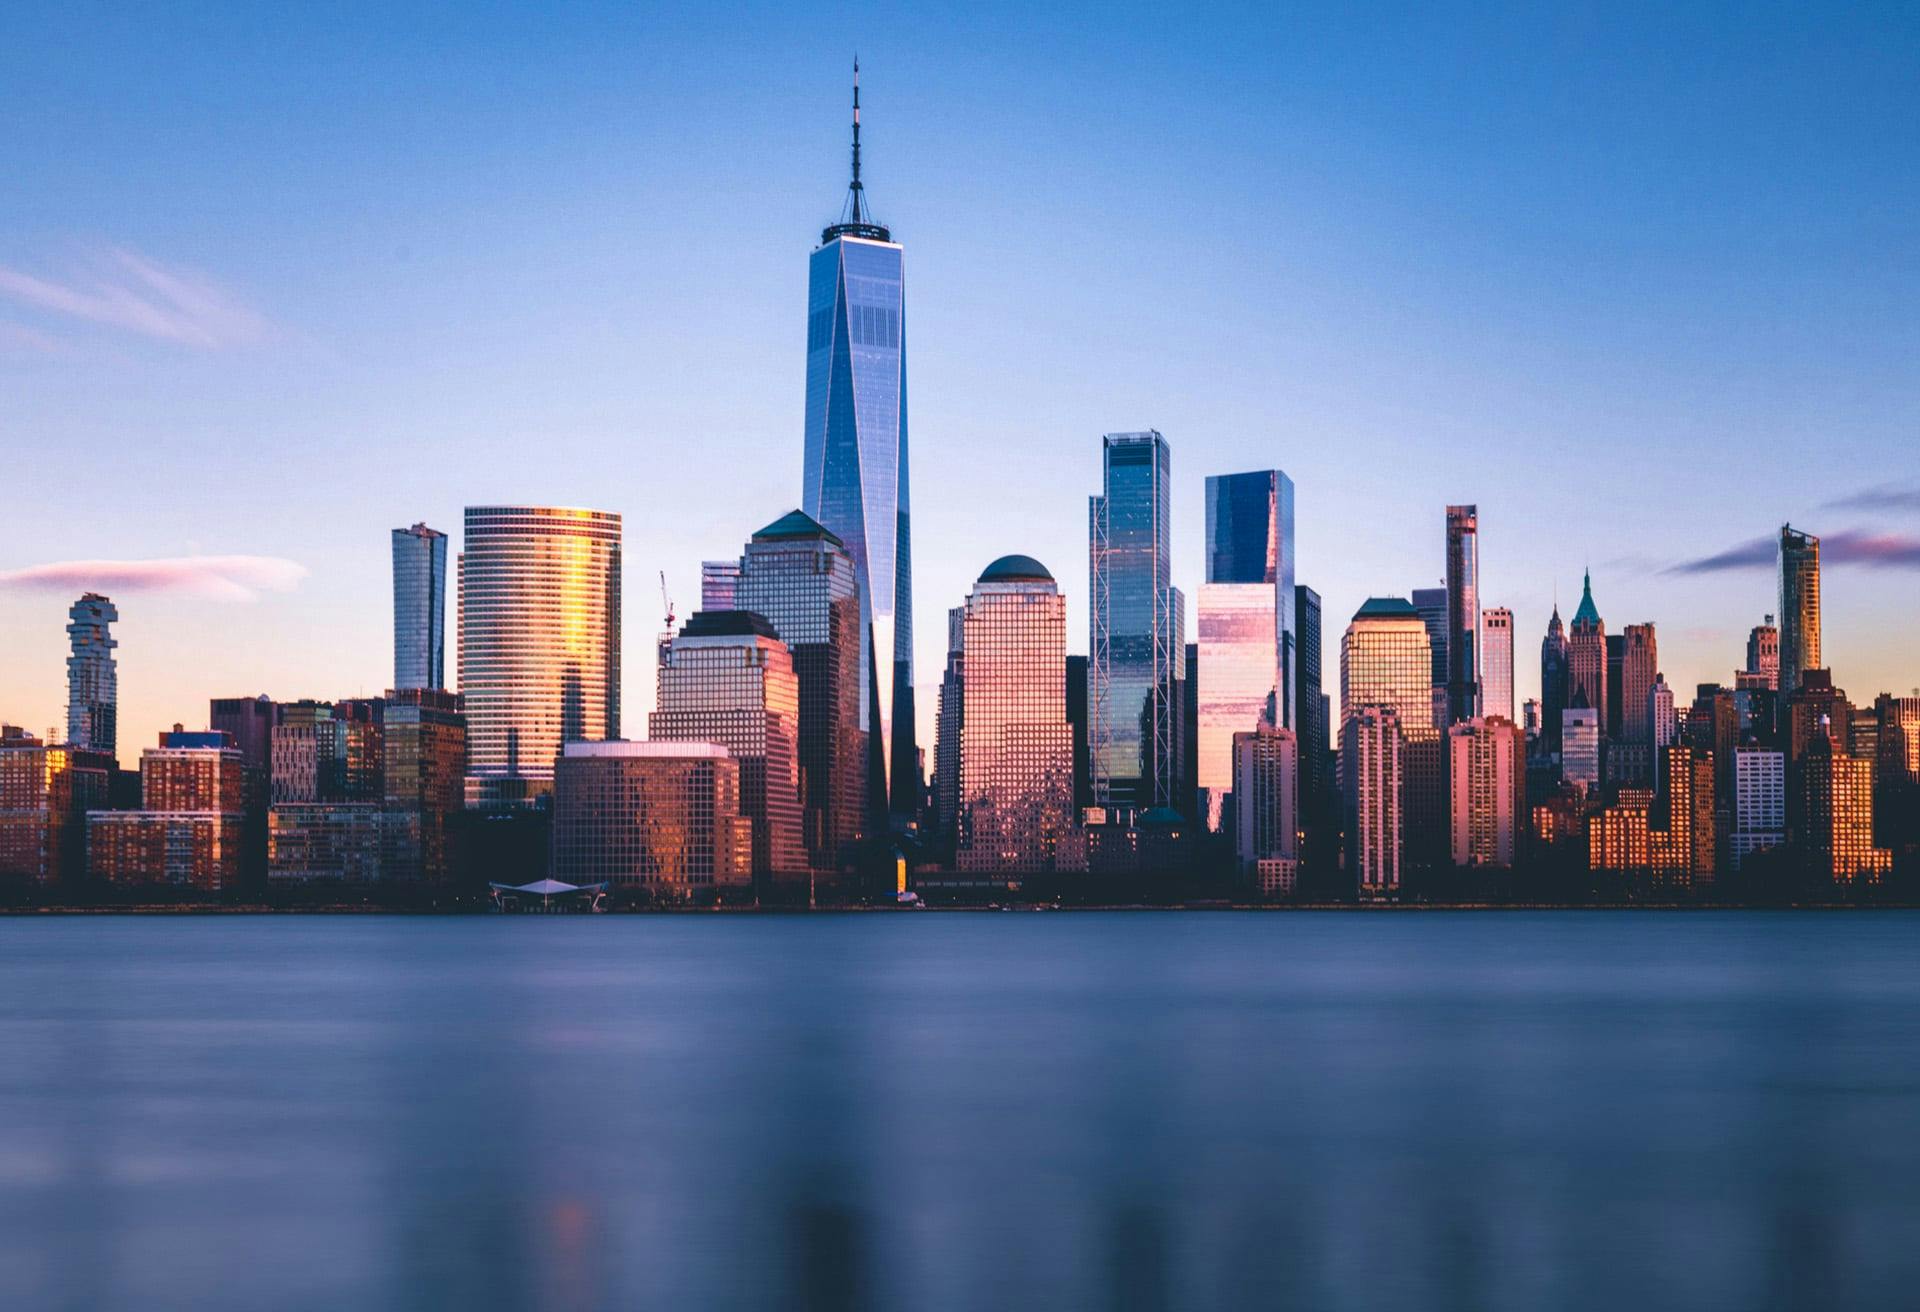 NYC city skyline